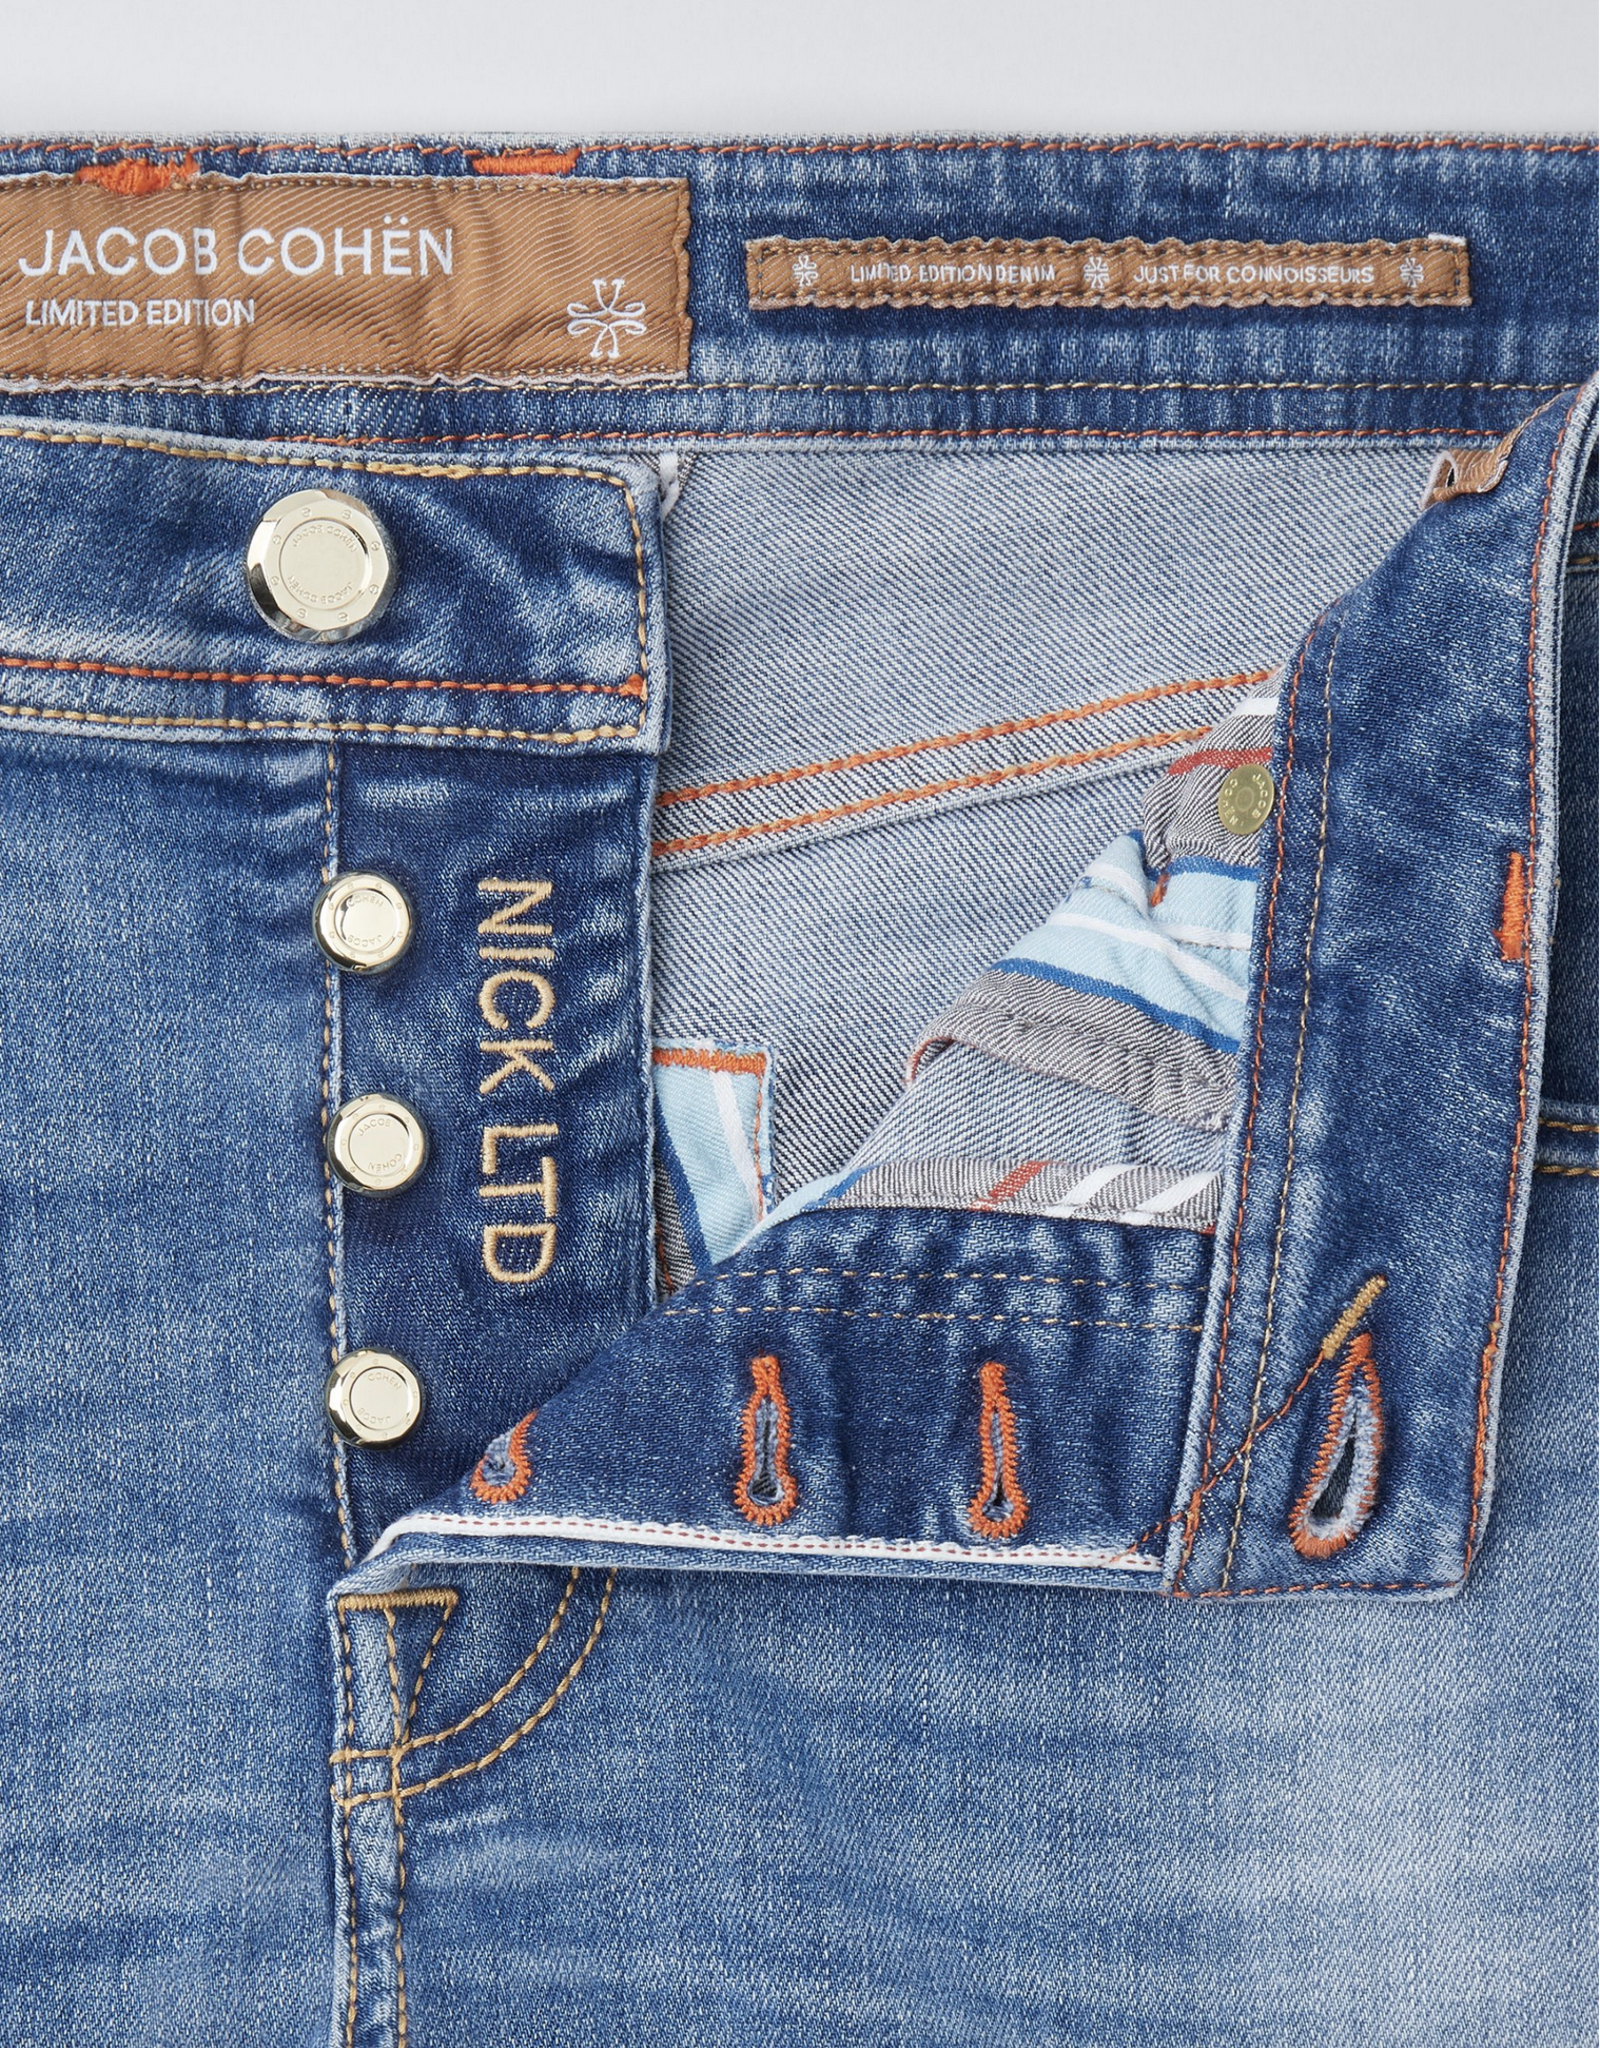 Jacob Cohën H Jacob Cohën Jeans Limited NICK SLIMFIT  UQL06 51 S3619